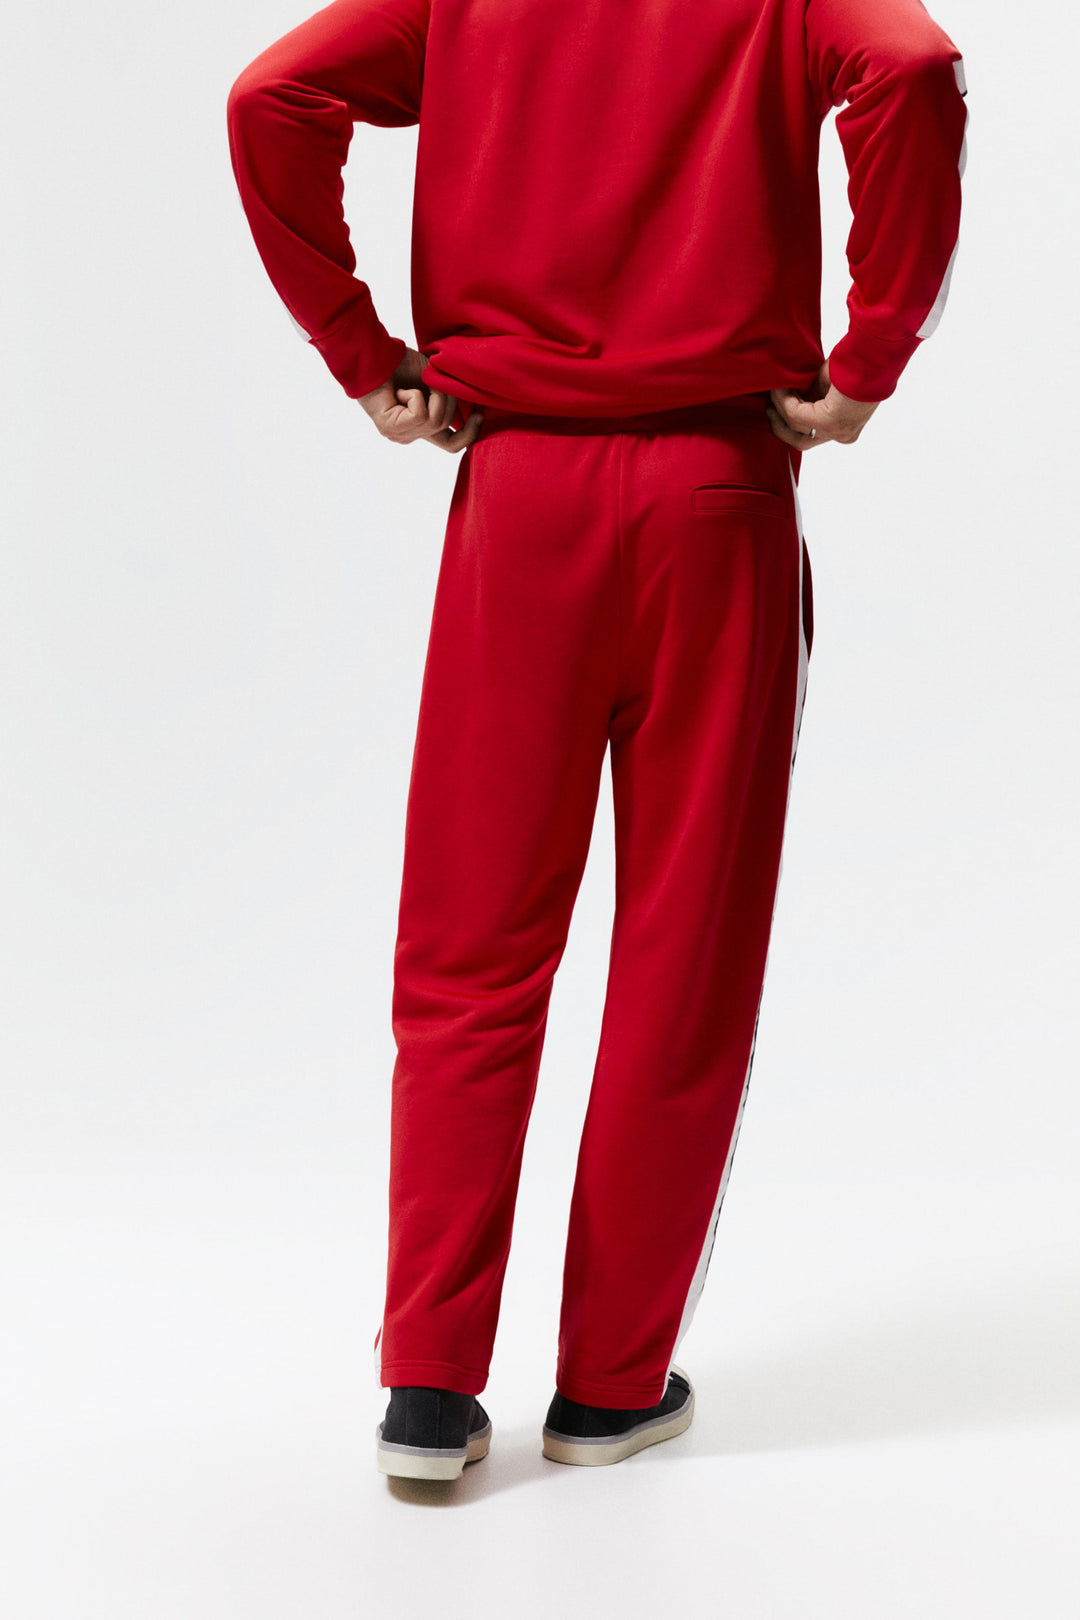 ZaraMan Knitted Jogg L-Terry Trouser 4161/302/600